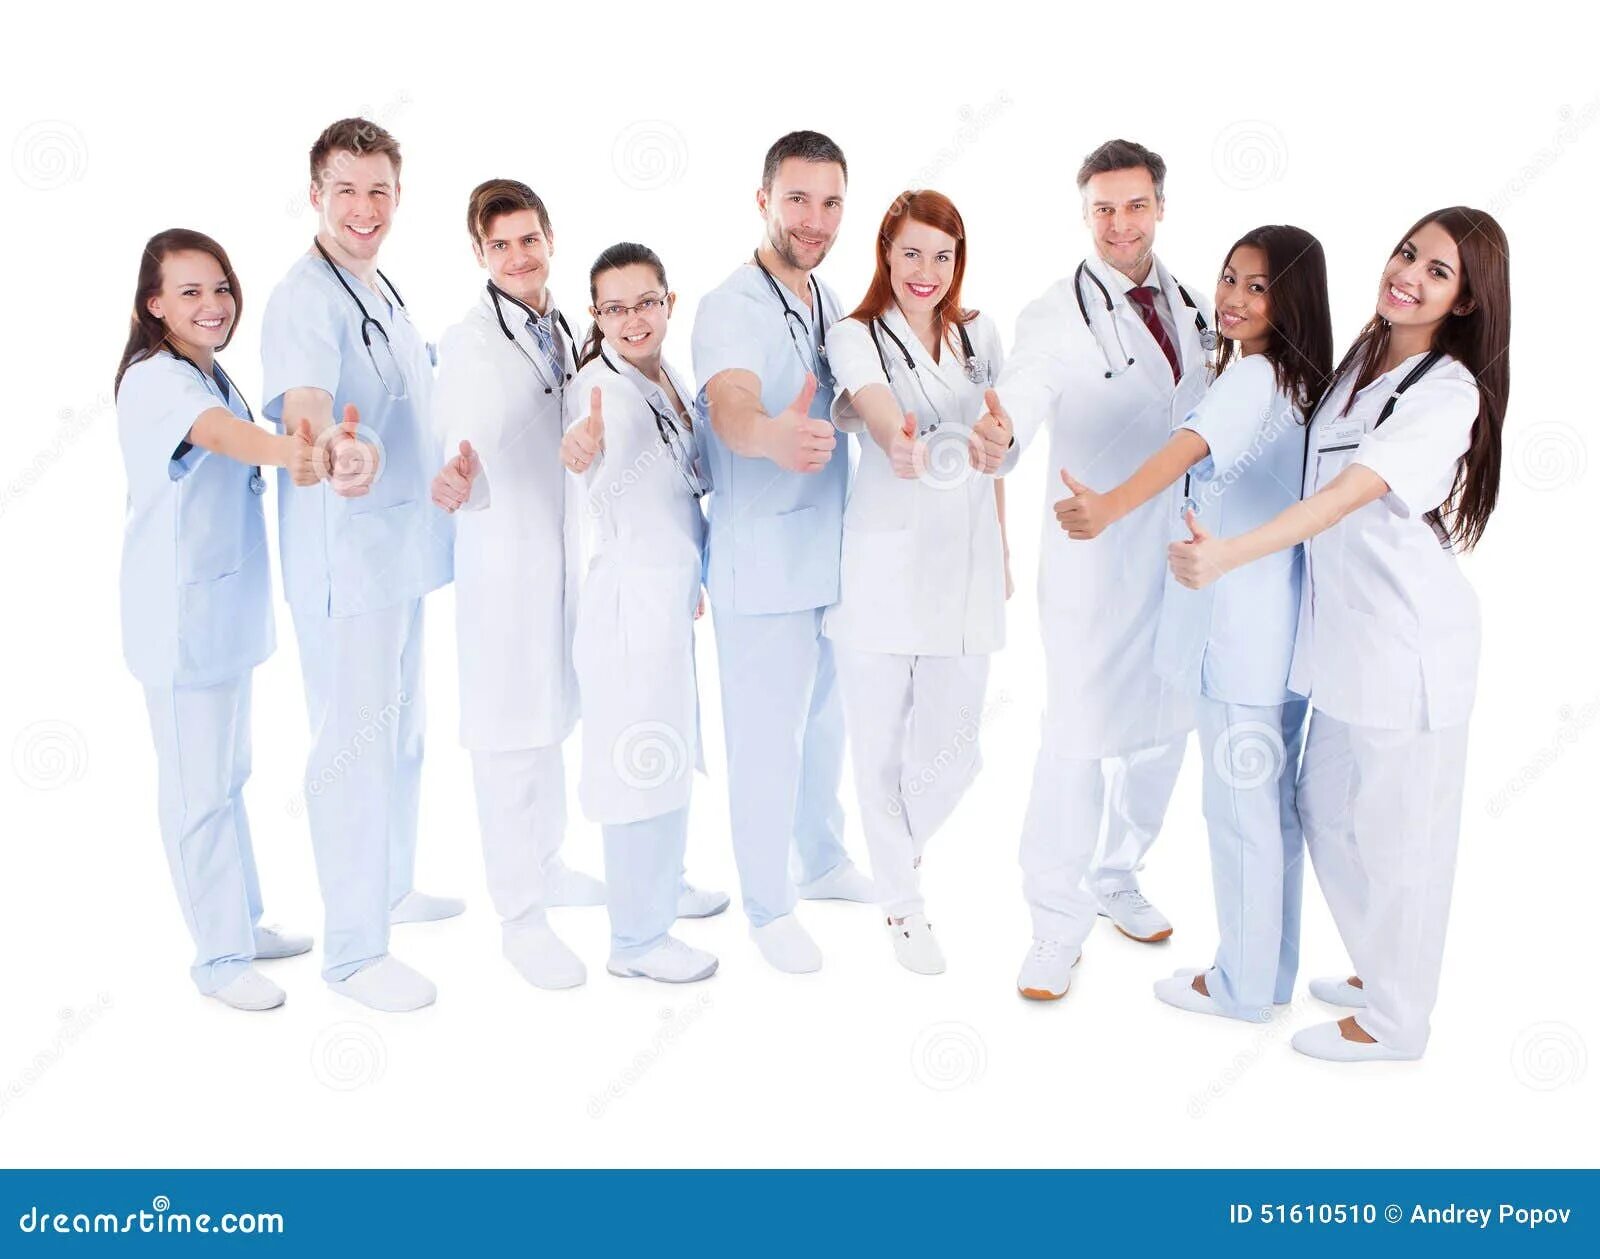 Профессиональная группа врачей. Коллектив медиков. Команда врачей. Много врачей. Дружный коллектив врачей.